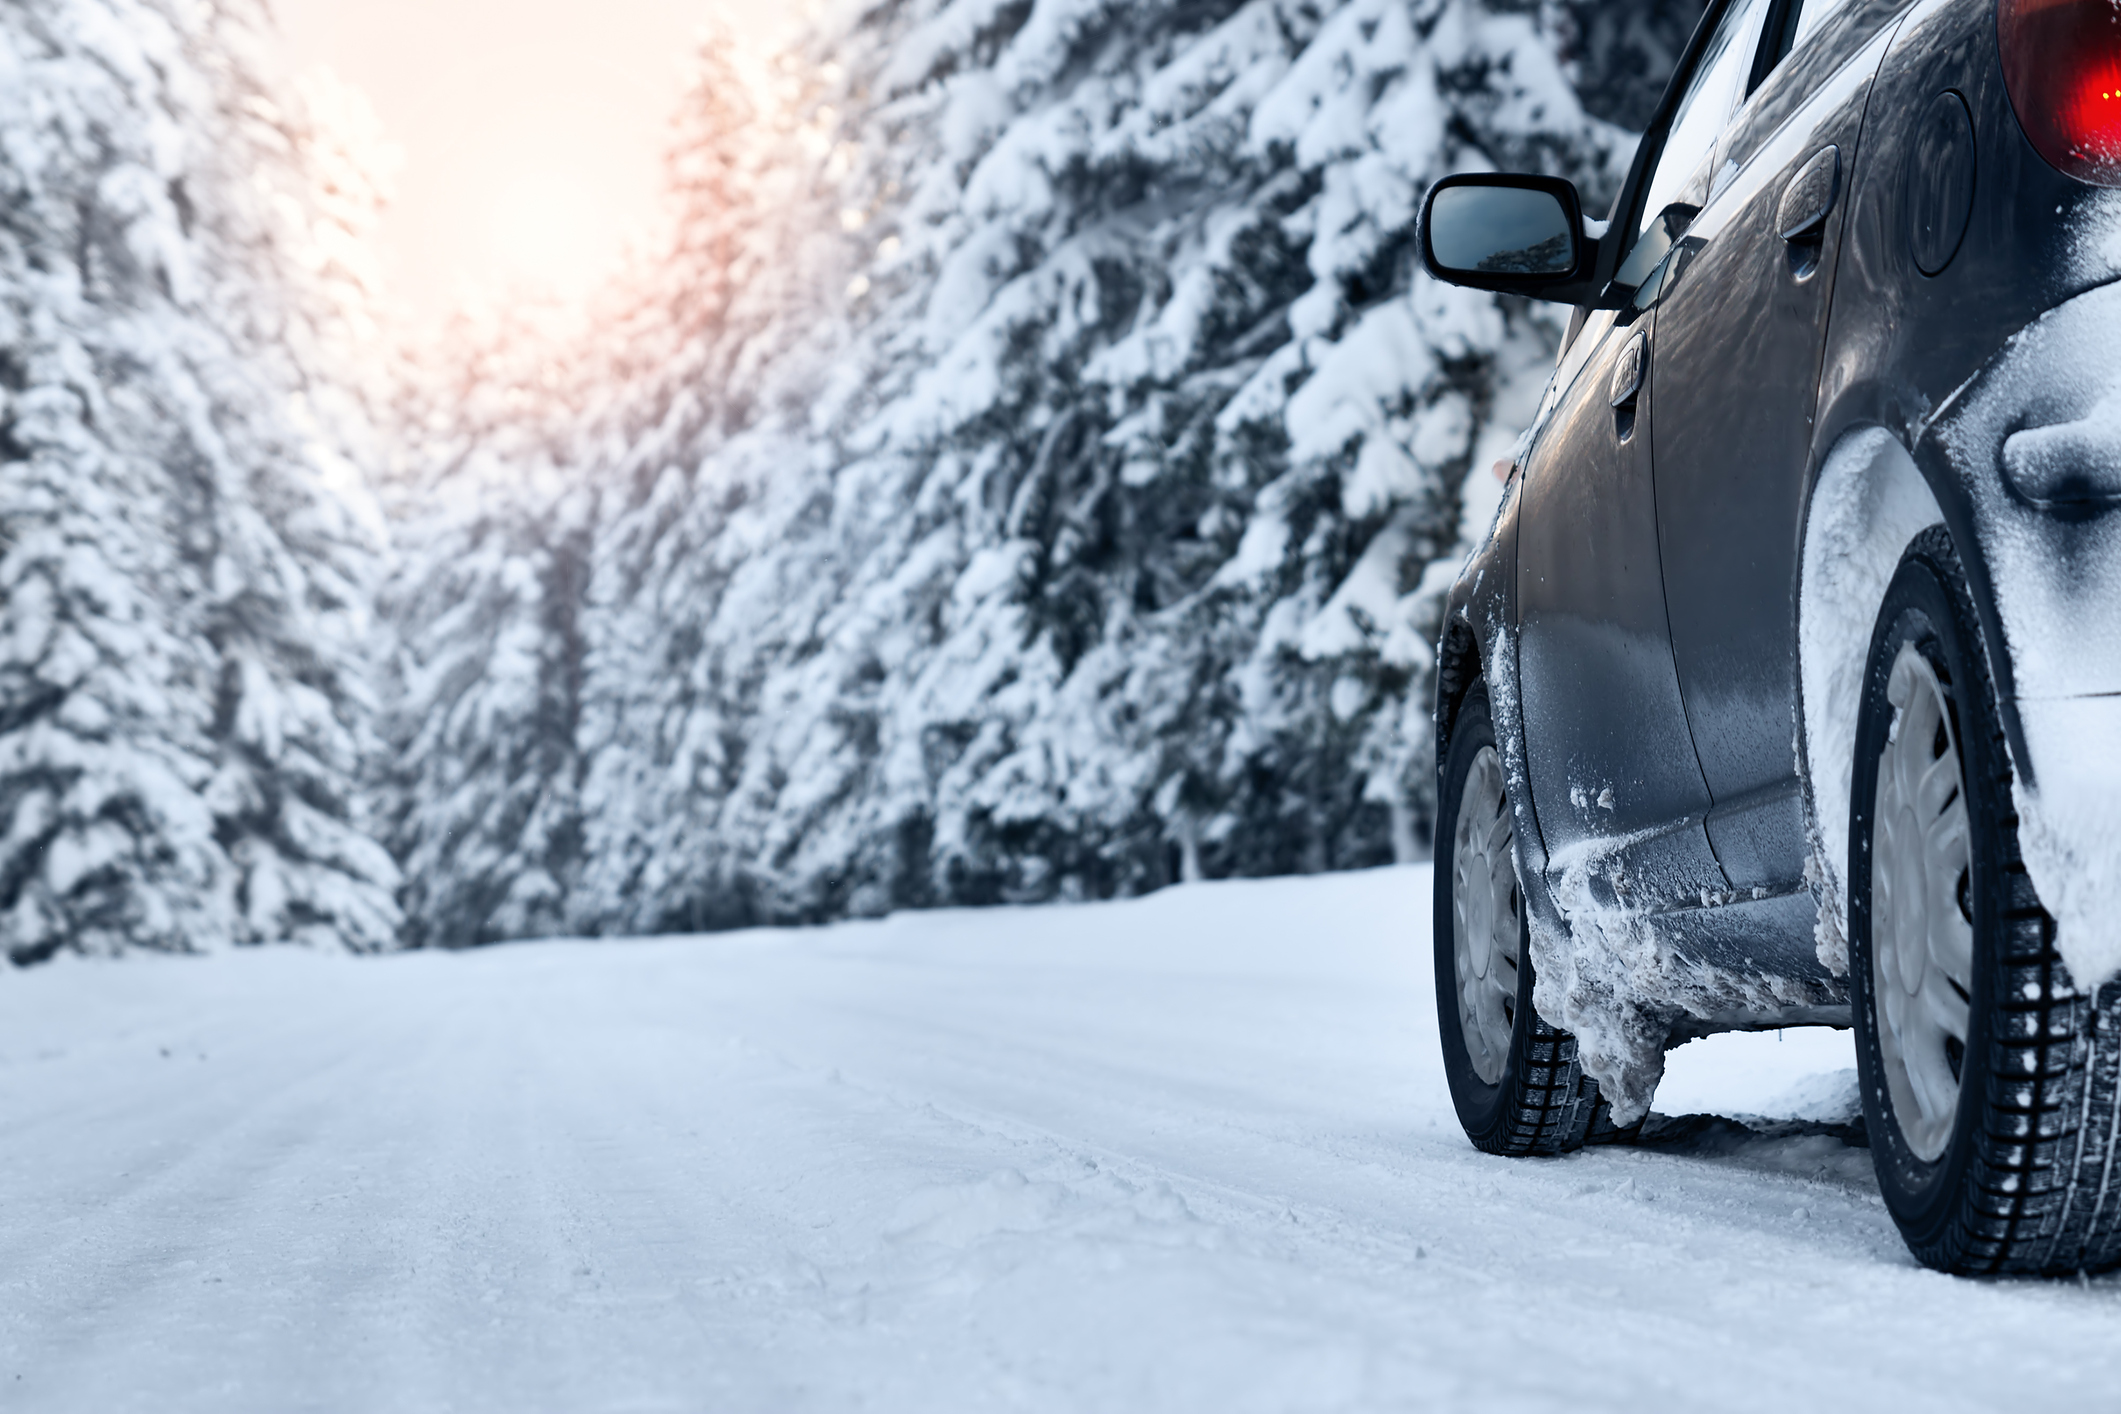 Winterausrüstung beim Auto: Unterschiedliche Pflichten in den